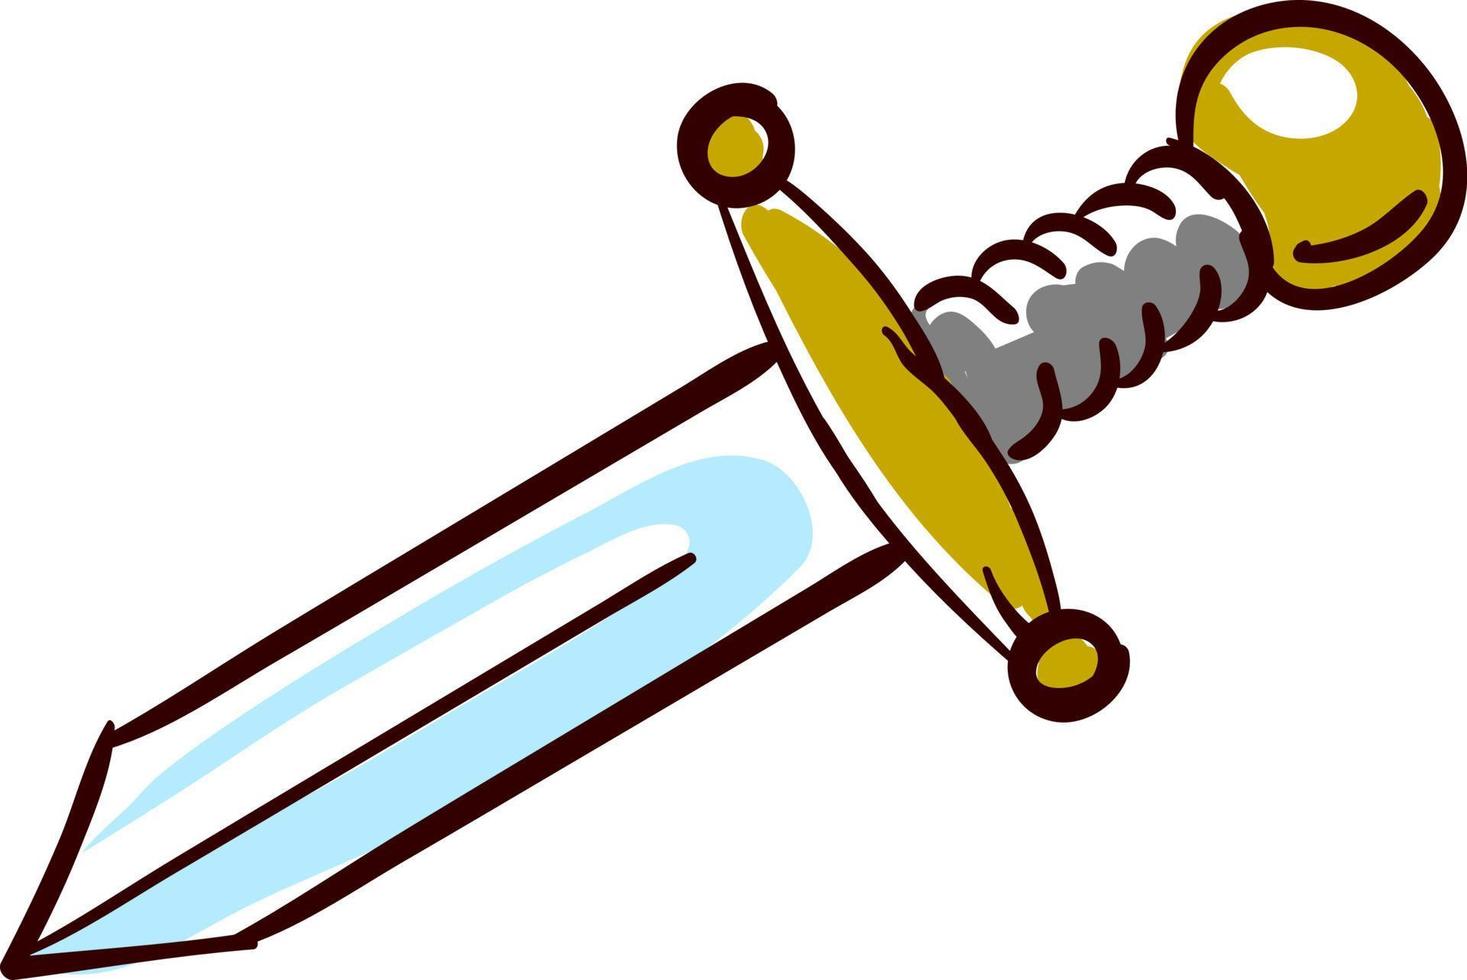 pequena espada, ilustração, vetor em fundo branco